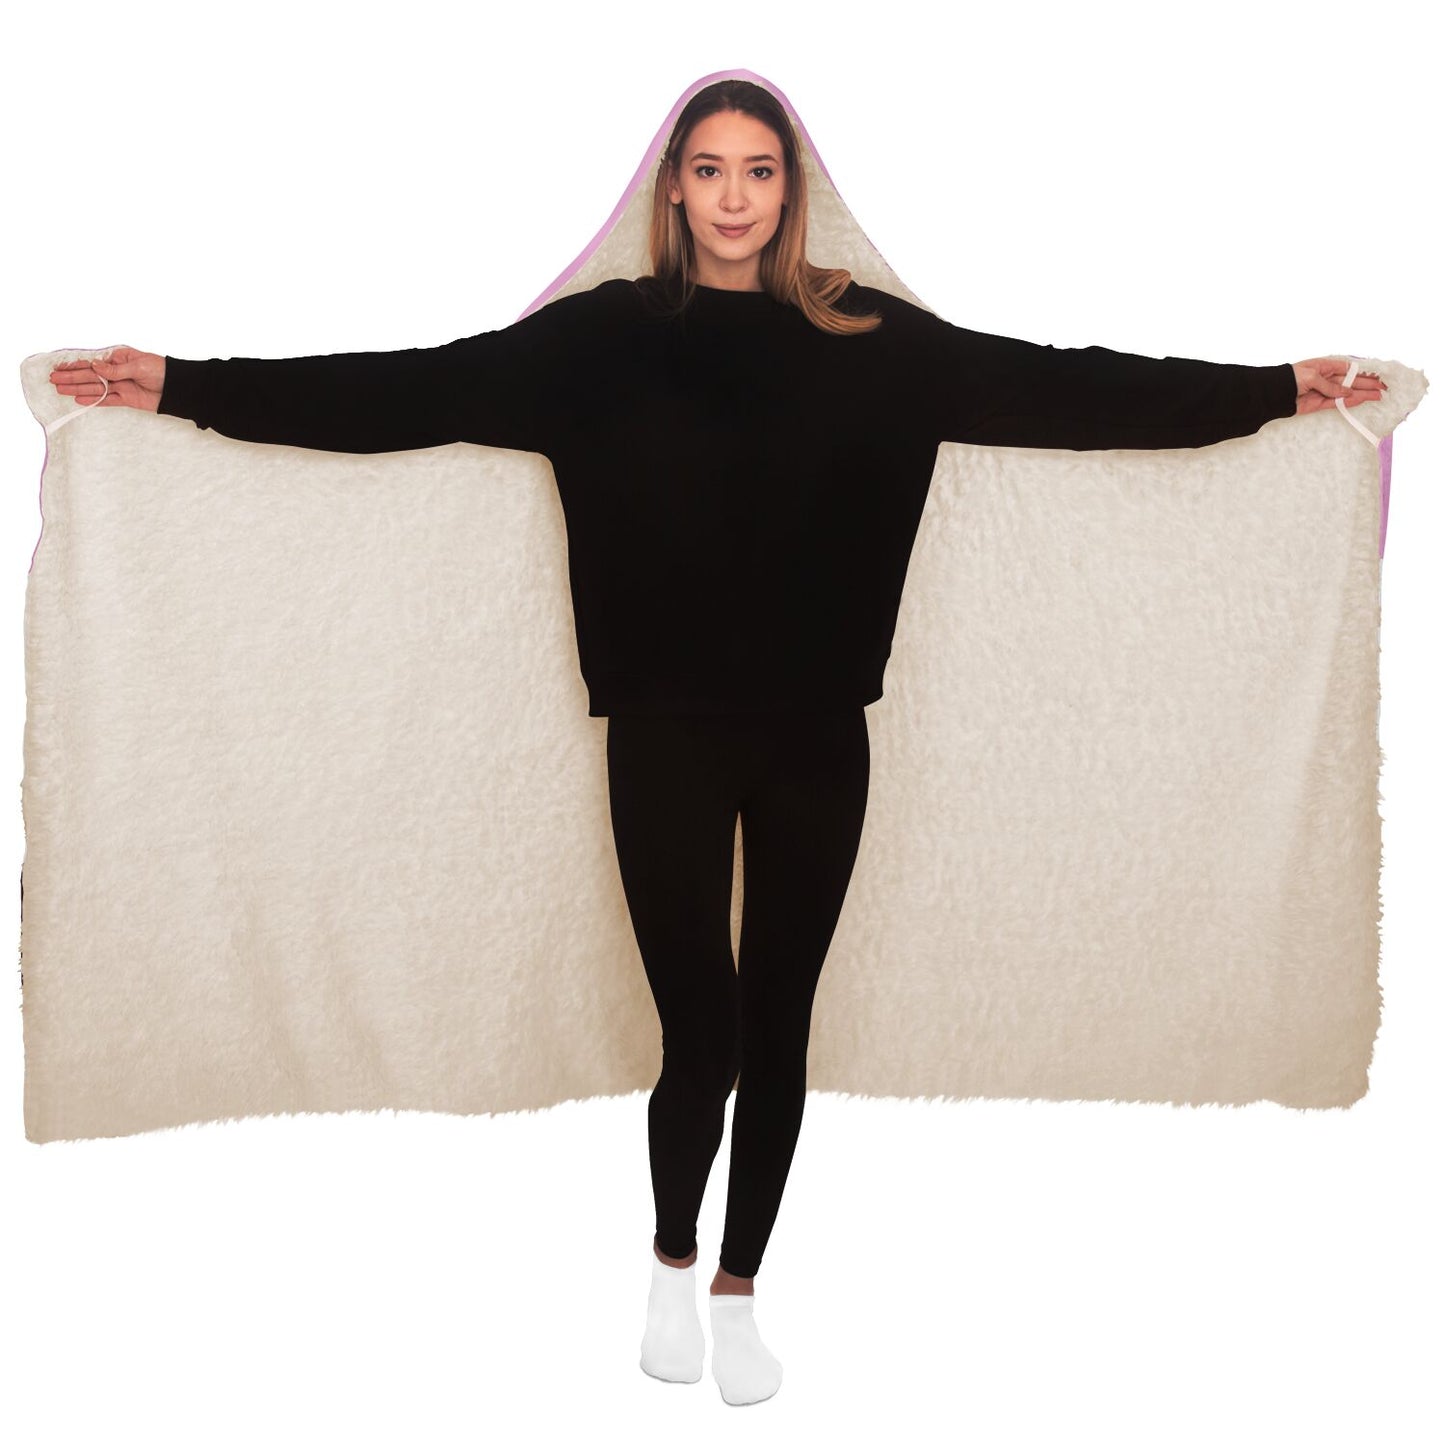 Girls Hooded Blanket / Personalized Blanket / Girls Christmas Gift